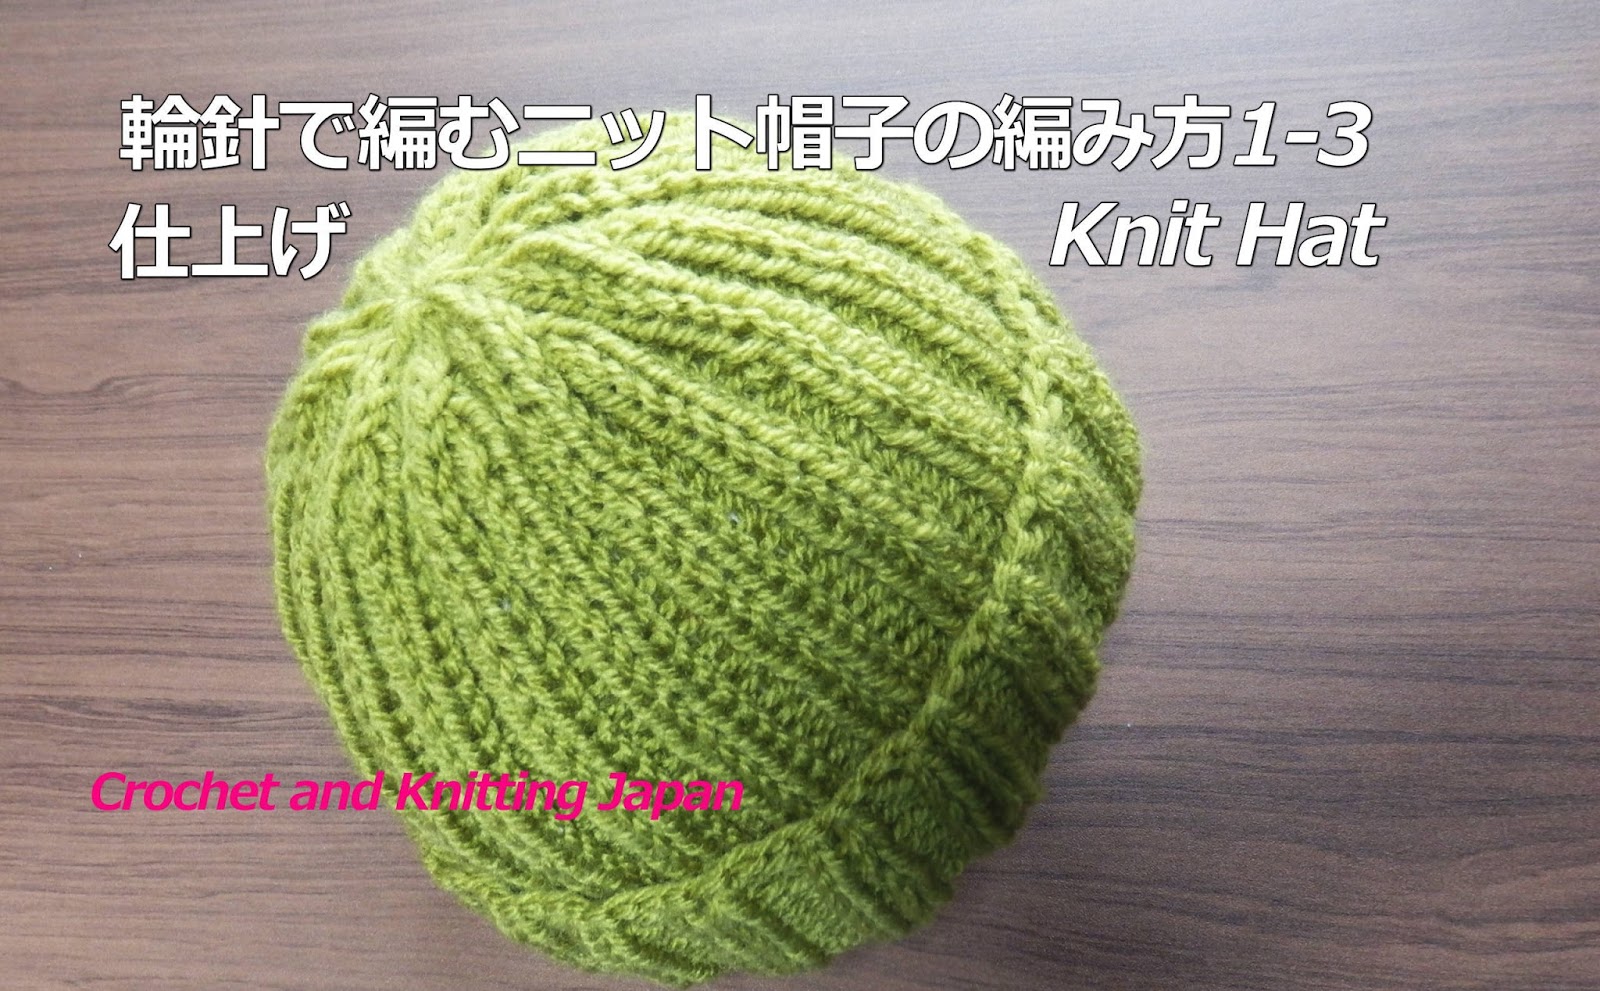 棒針編み Knitting Japan ニッティングジャパン 輪針で編むニット帽子の編み方1 3 とじ針で仕上げ ２目ゴム編み模様 How To Knit Hat For Beginners